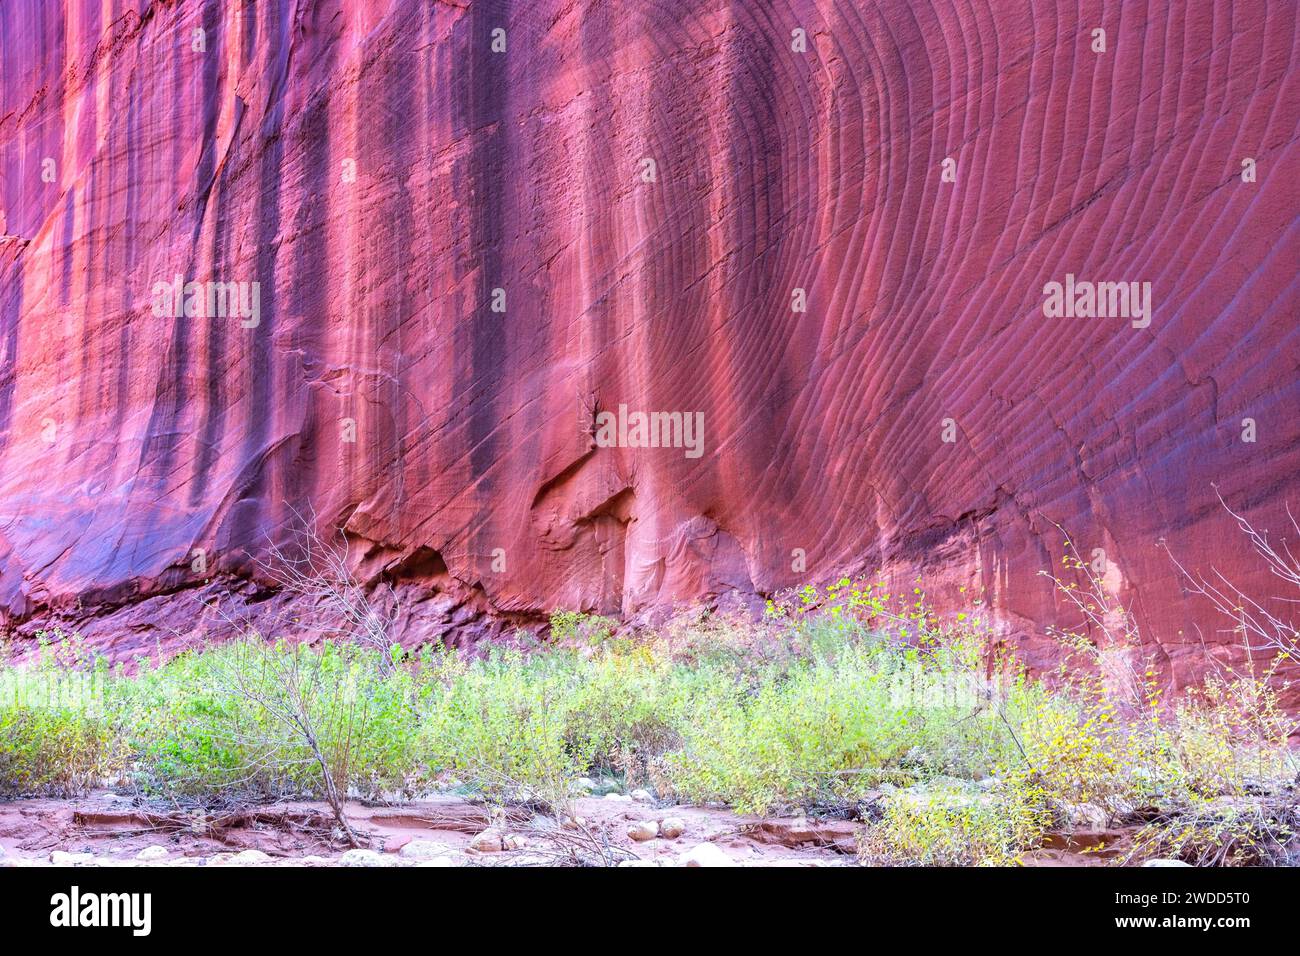 Sfondo verticale eroso del muro di roccia rossa, famoso Buscksin Gulch slot Canyon. Paesaggio panoramico del deserto Green Grass, contea di Kane, Utah, Stati Uniti sud-occidentali Foto Stock